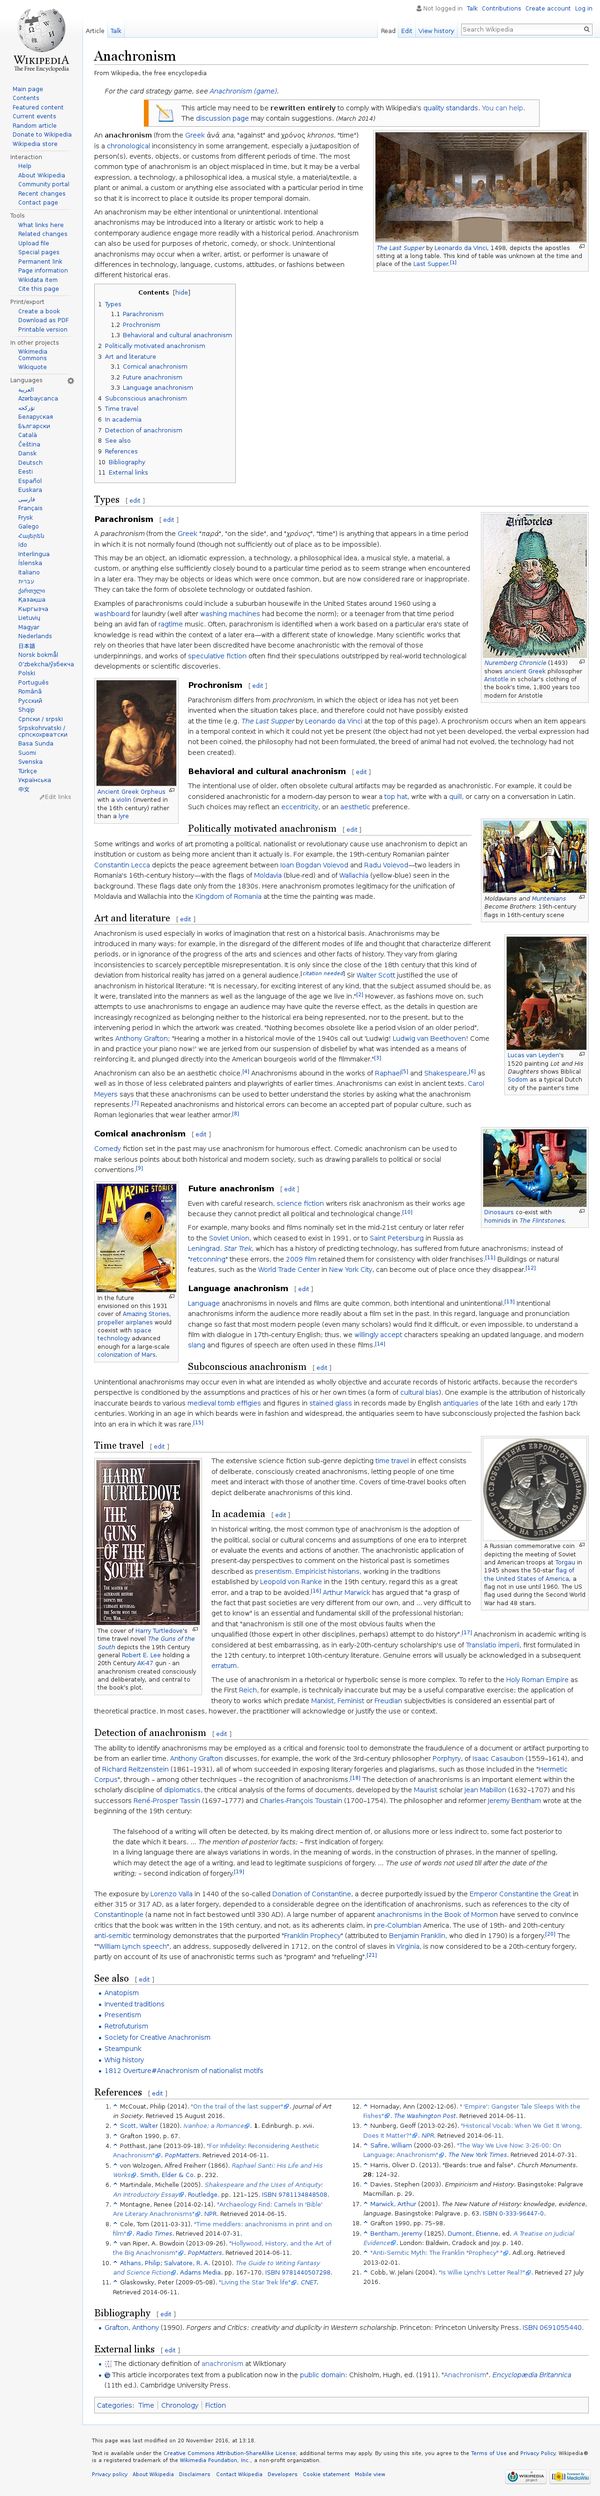 Anachronism - Wikipedia, the free encyclopedia